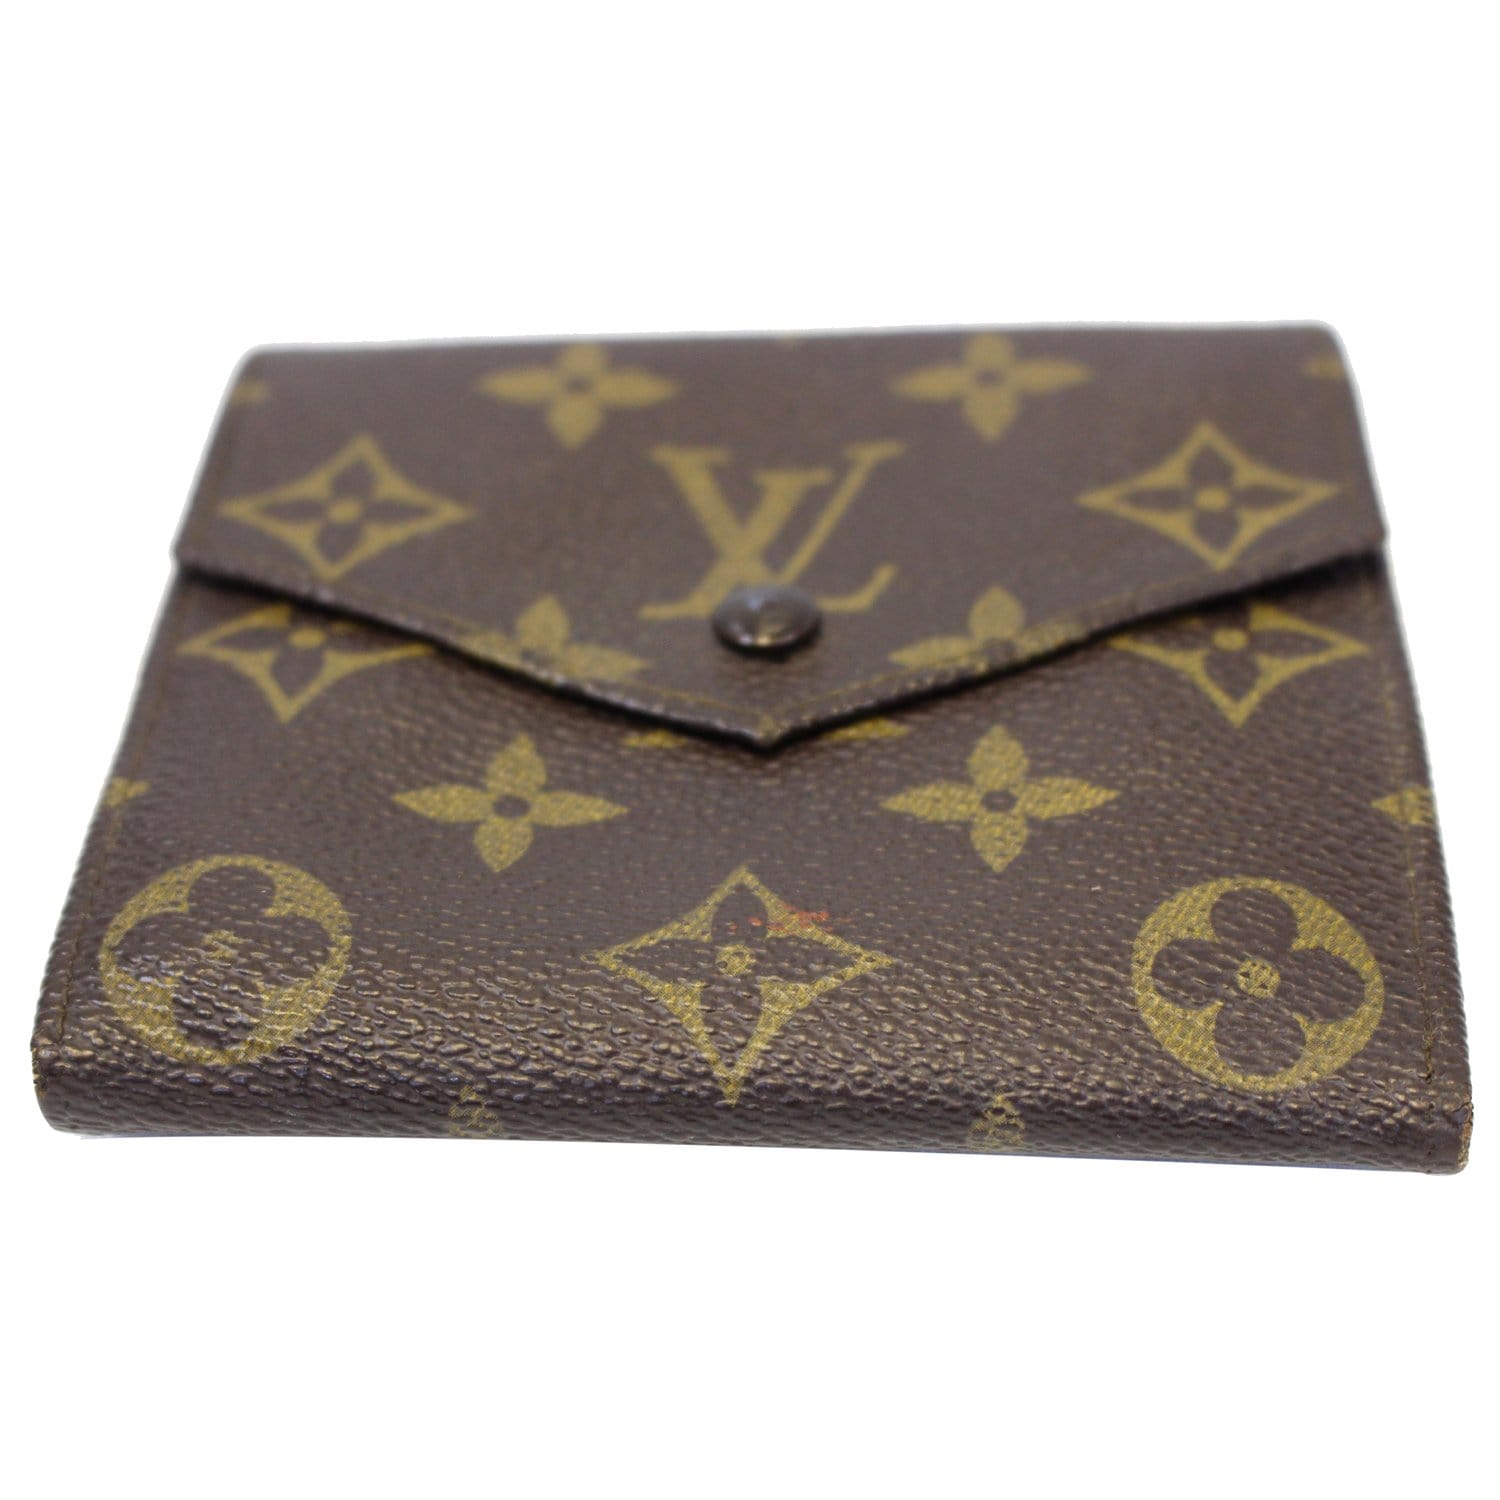 Louis Vuitton Vintage Wallet